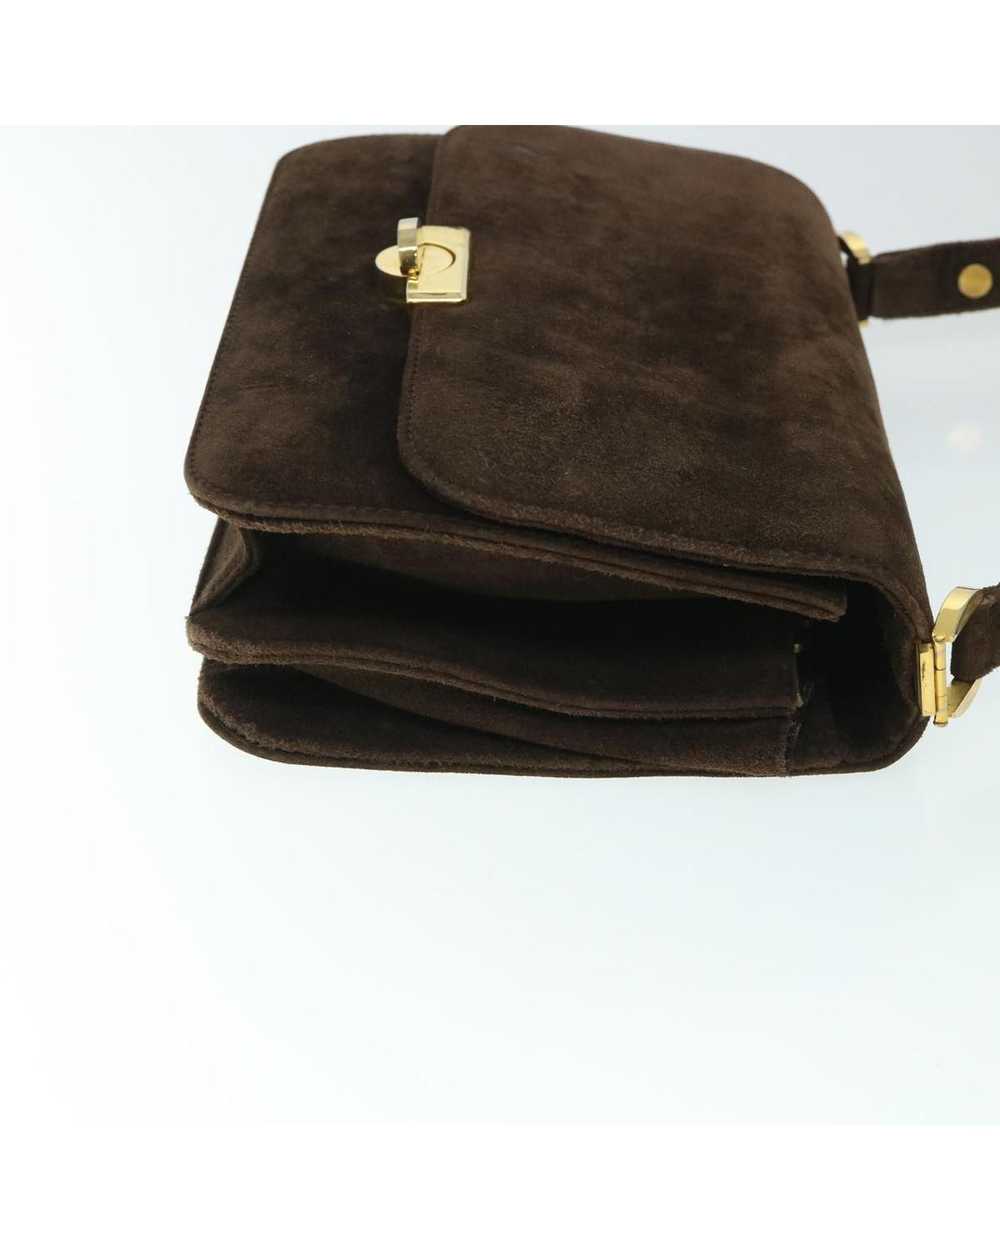 Gucci Suede Turn Lock Shoulder Bag - image 3